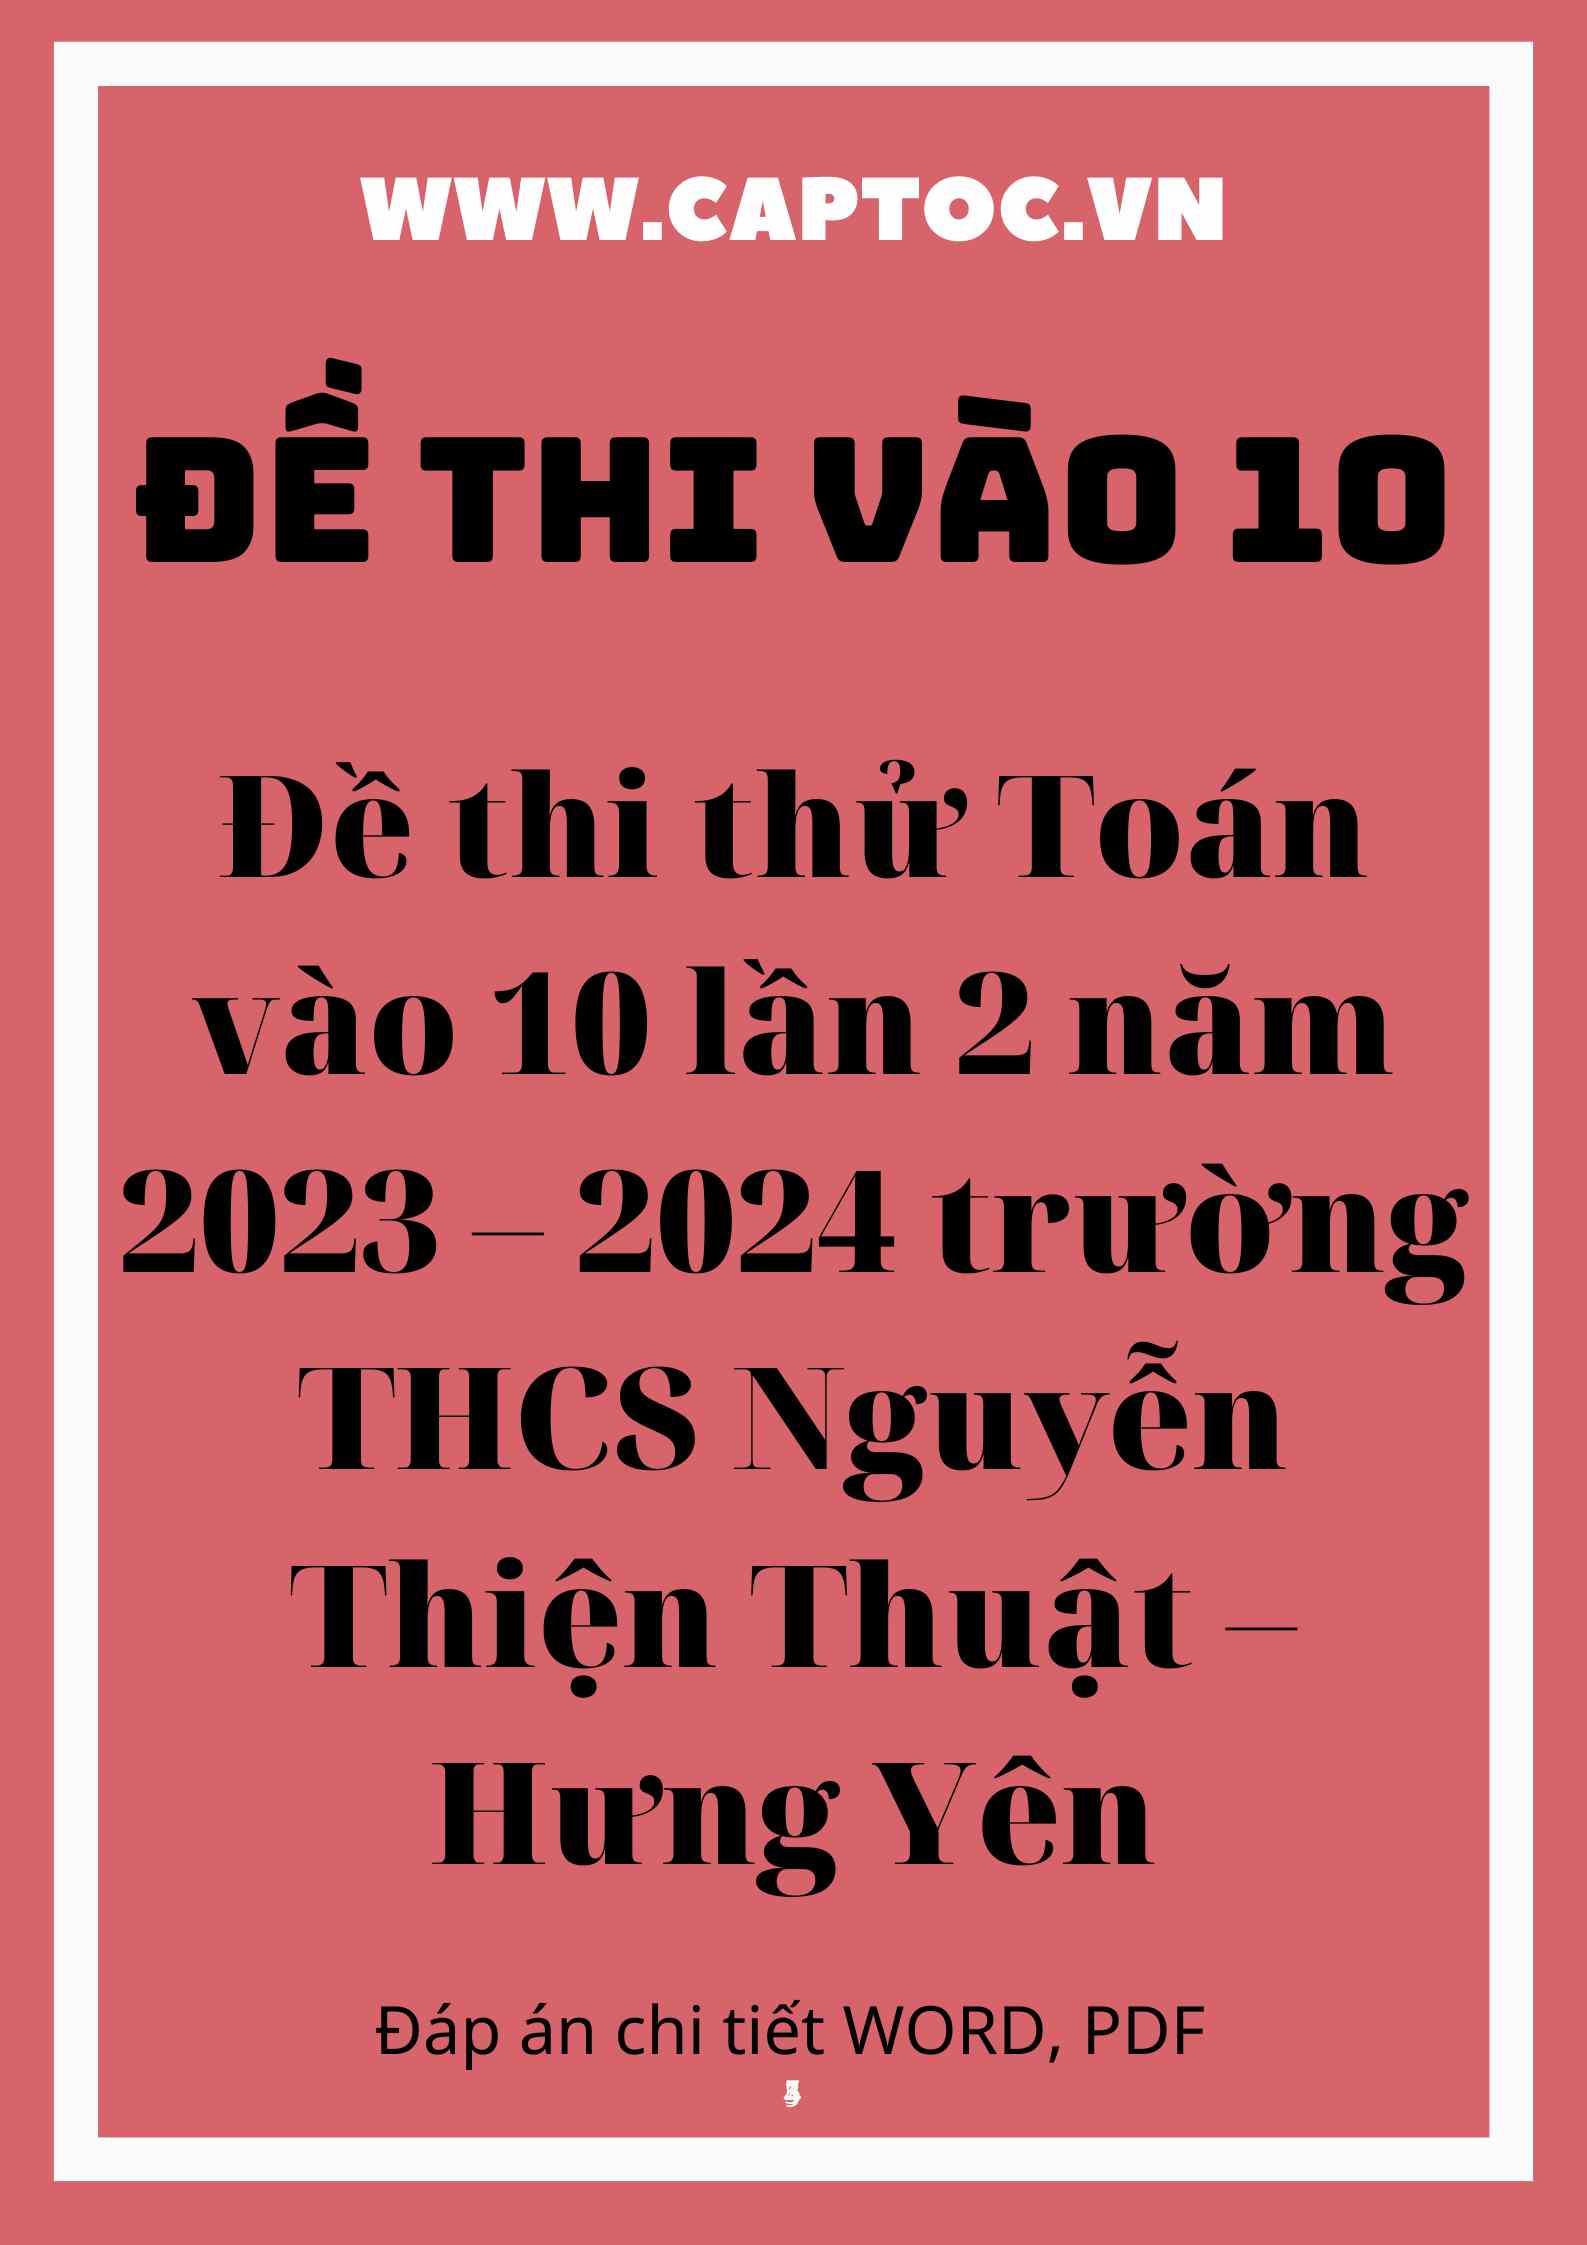 Đề thi thử Toán vào 10 lần 2 năm 2023 – 2024 trường THCS Nguyễn Thiện Thuật – Hưng Yên